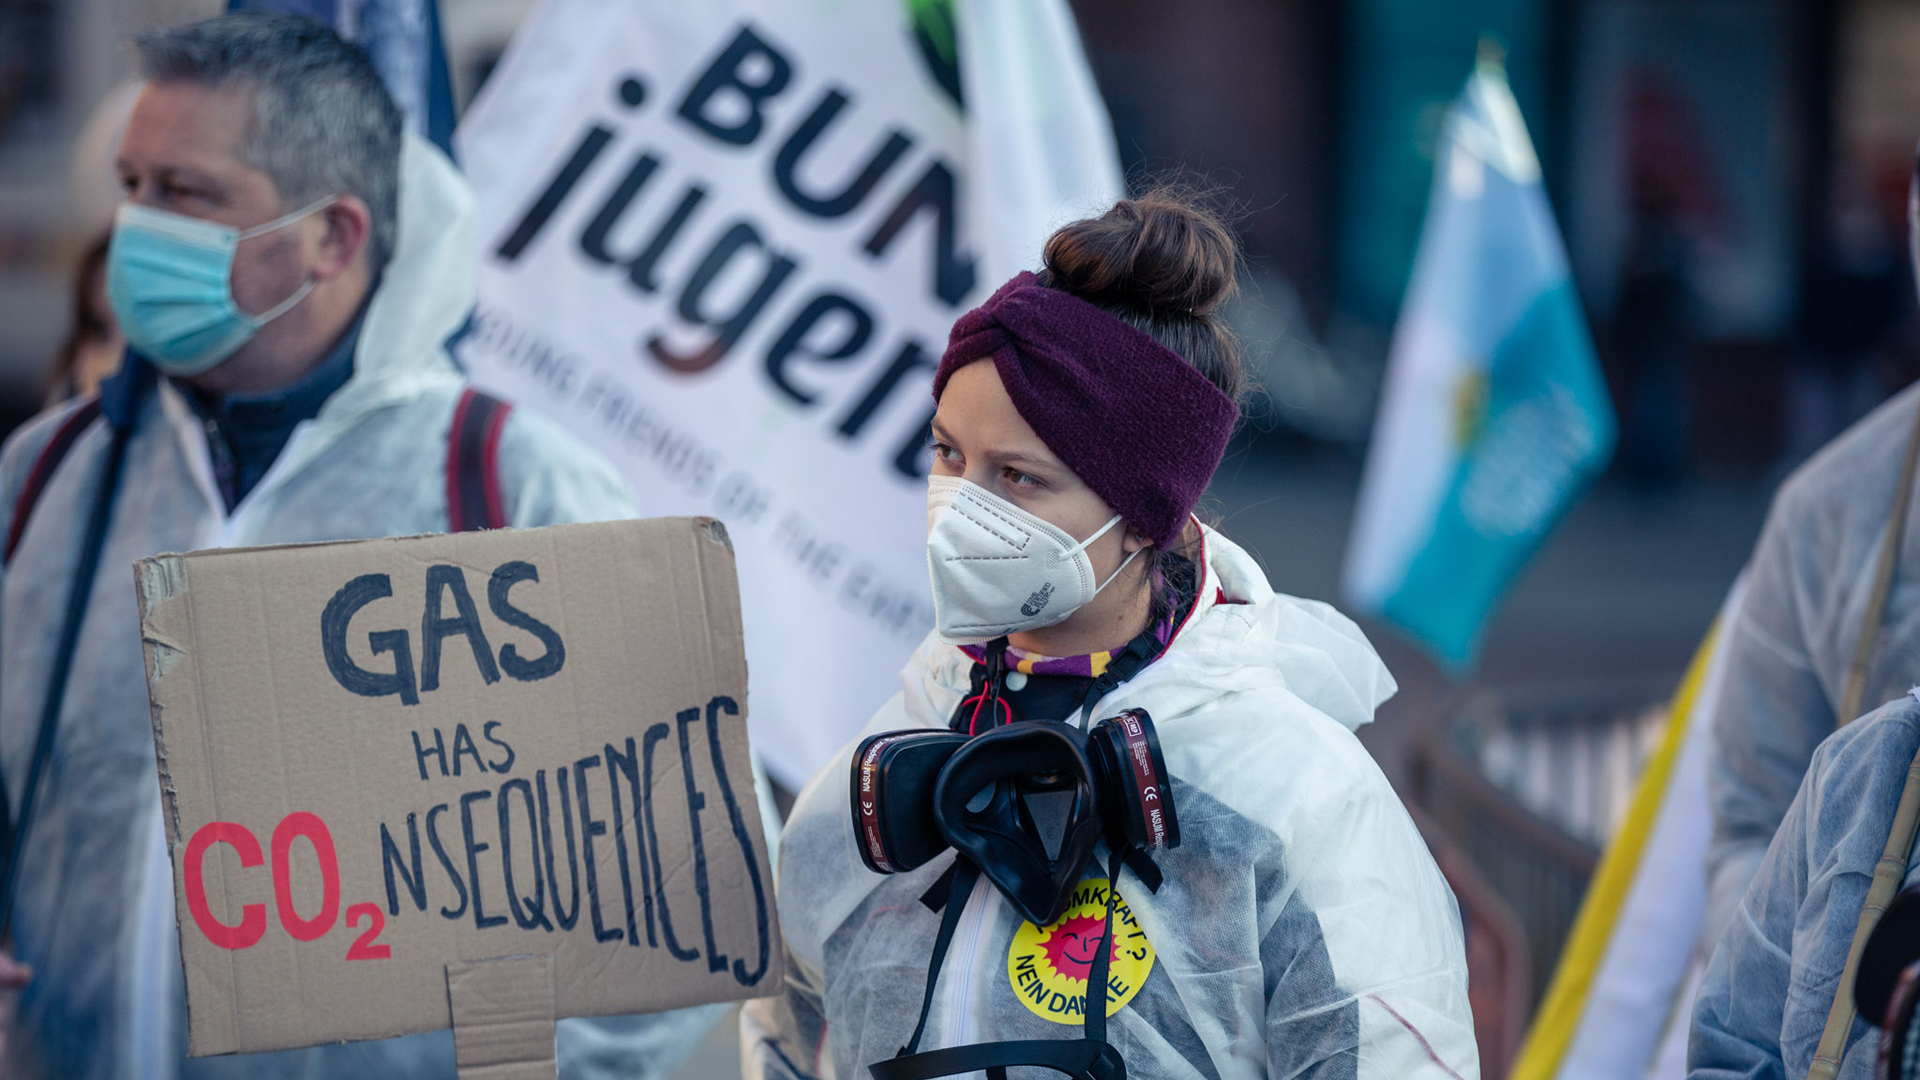 Eine junge Frau im weißen Schutzanzug hält ein Schild, auf dem "Gas has Consequences" steht.